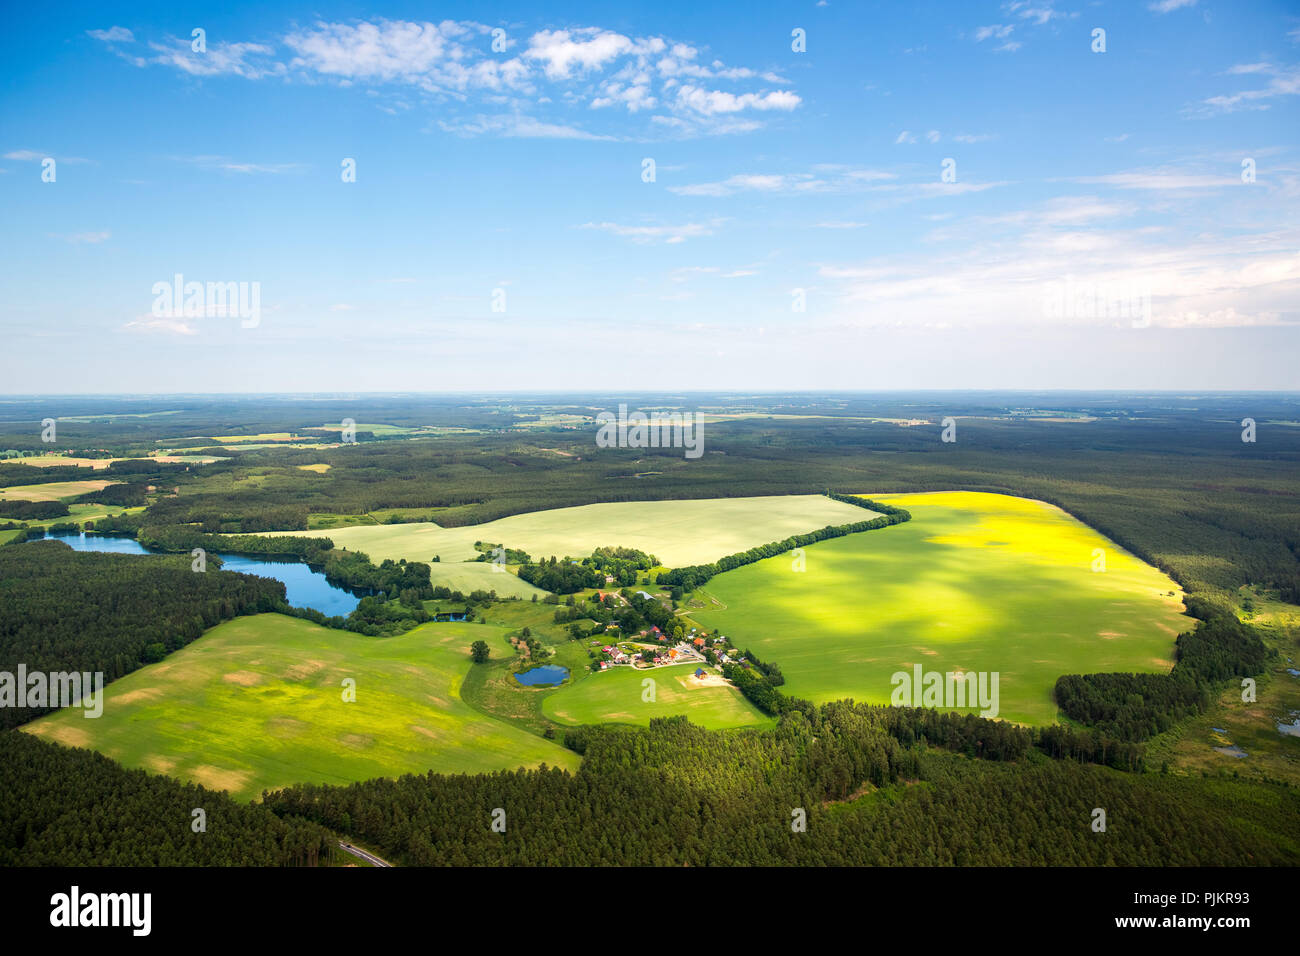 Gmina Czarna Dabrowka, champs de maïs, des forêts, des zones forestières, occidentale, côte de la mer Baltique, Pomorskie, Pologne Banque D'Images